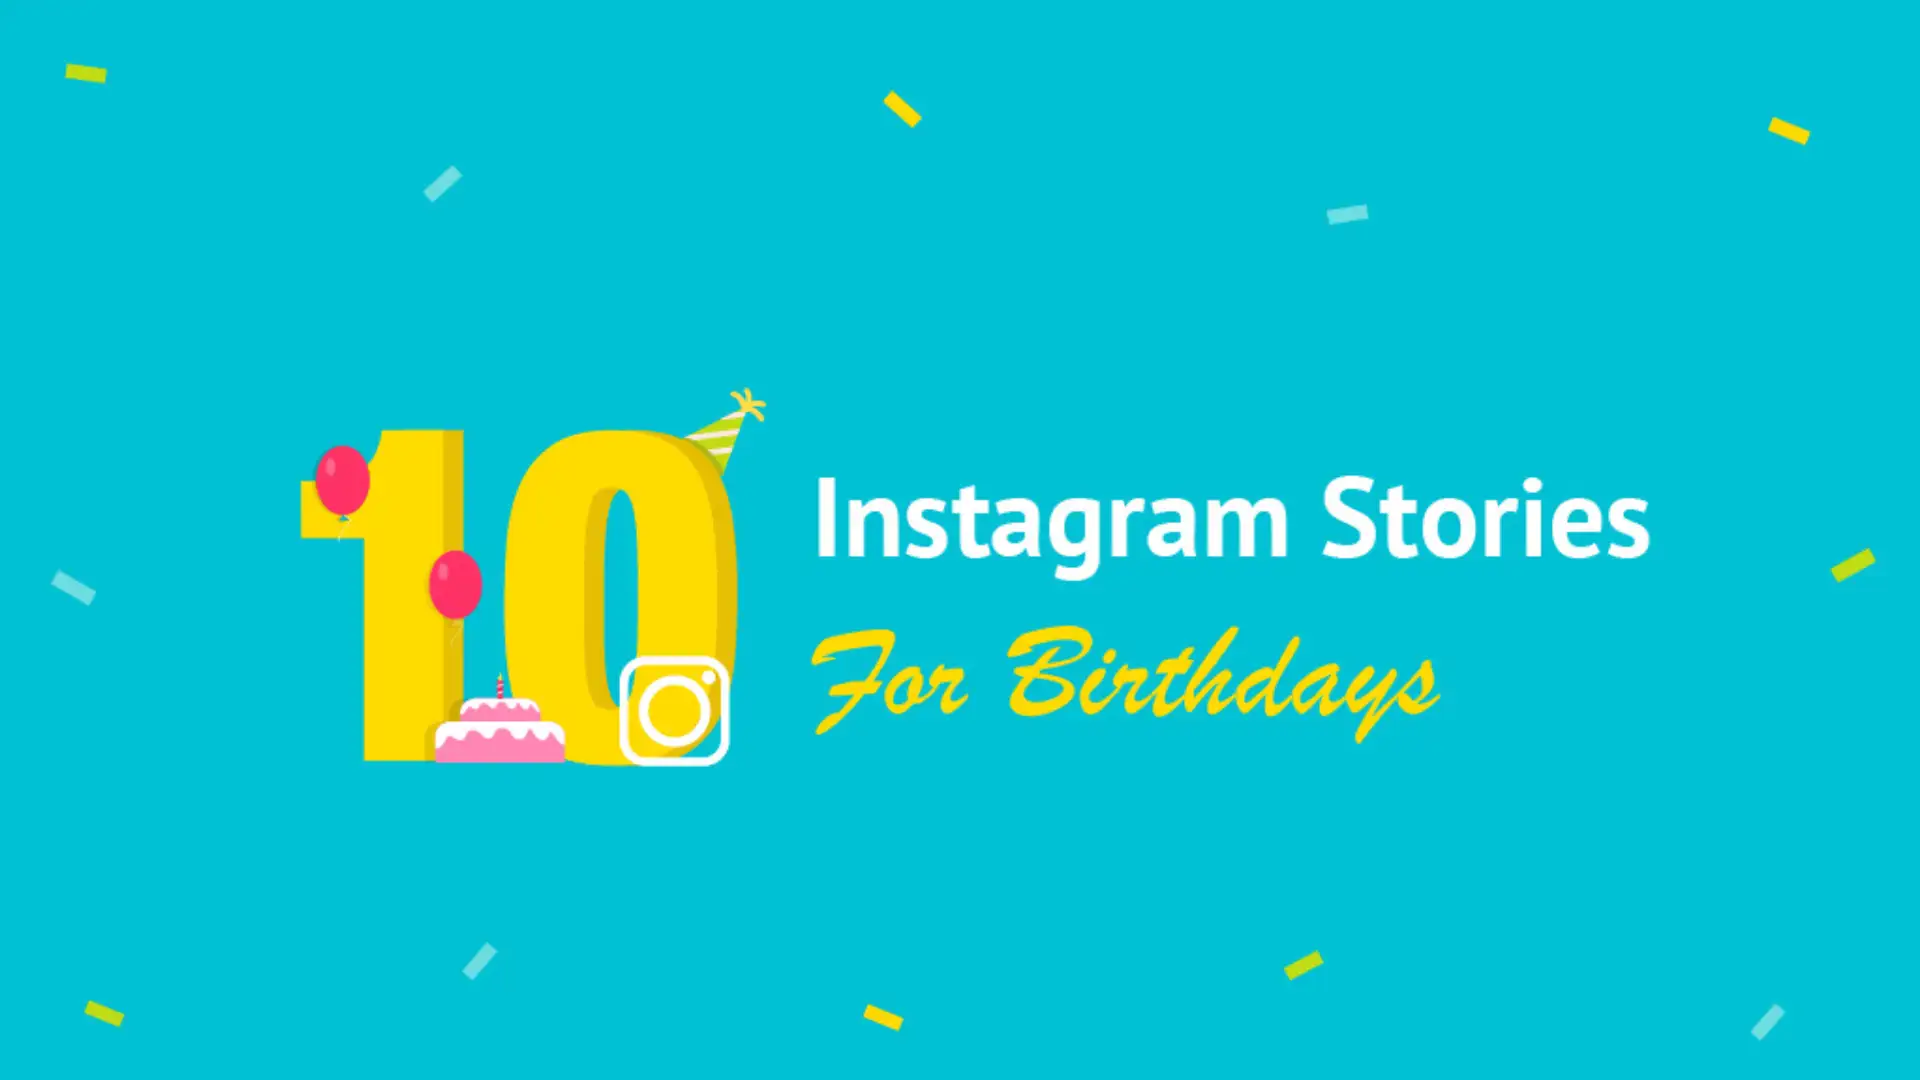 Bạn đang tìm kiếm ý tưởng cho câu chuyện sinh nhật của mình trên Instagram? Hãy cùng chúng tôi khám phá những ý tưởng sáng tạo để biến ngày sinh nhật của bạn trở nên đặc biệt hơn bao giờ hết! Với những hình ảnh đẹp và câu chuyện thú vị, bạn sẽ khiến cho tất cả mọi người phải trầm trồ và mong chờ đến ngày sinh nhật của mình.